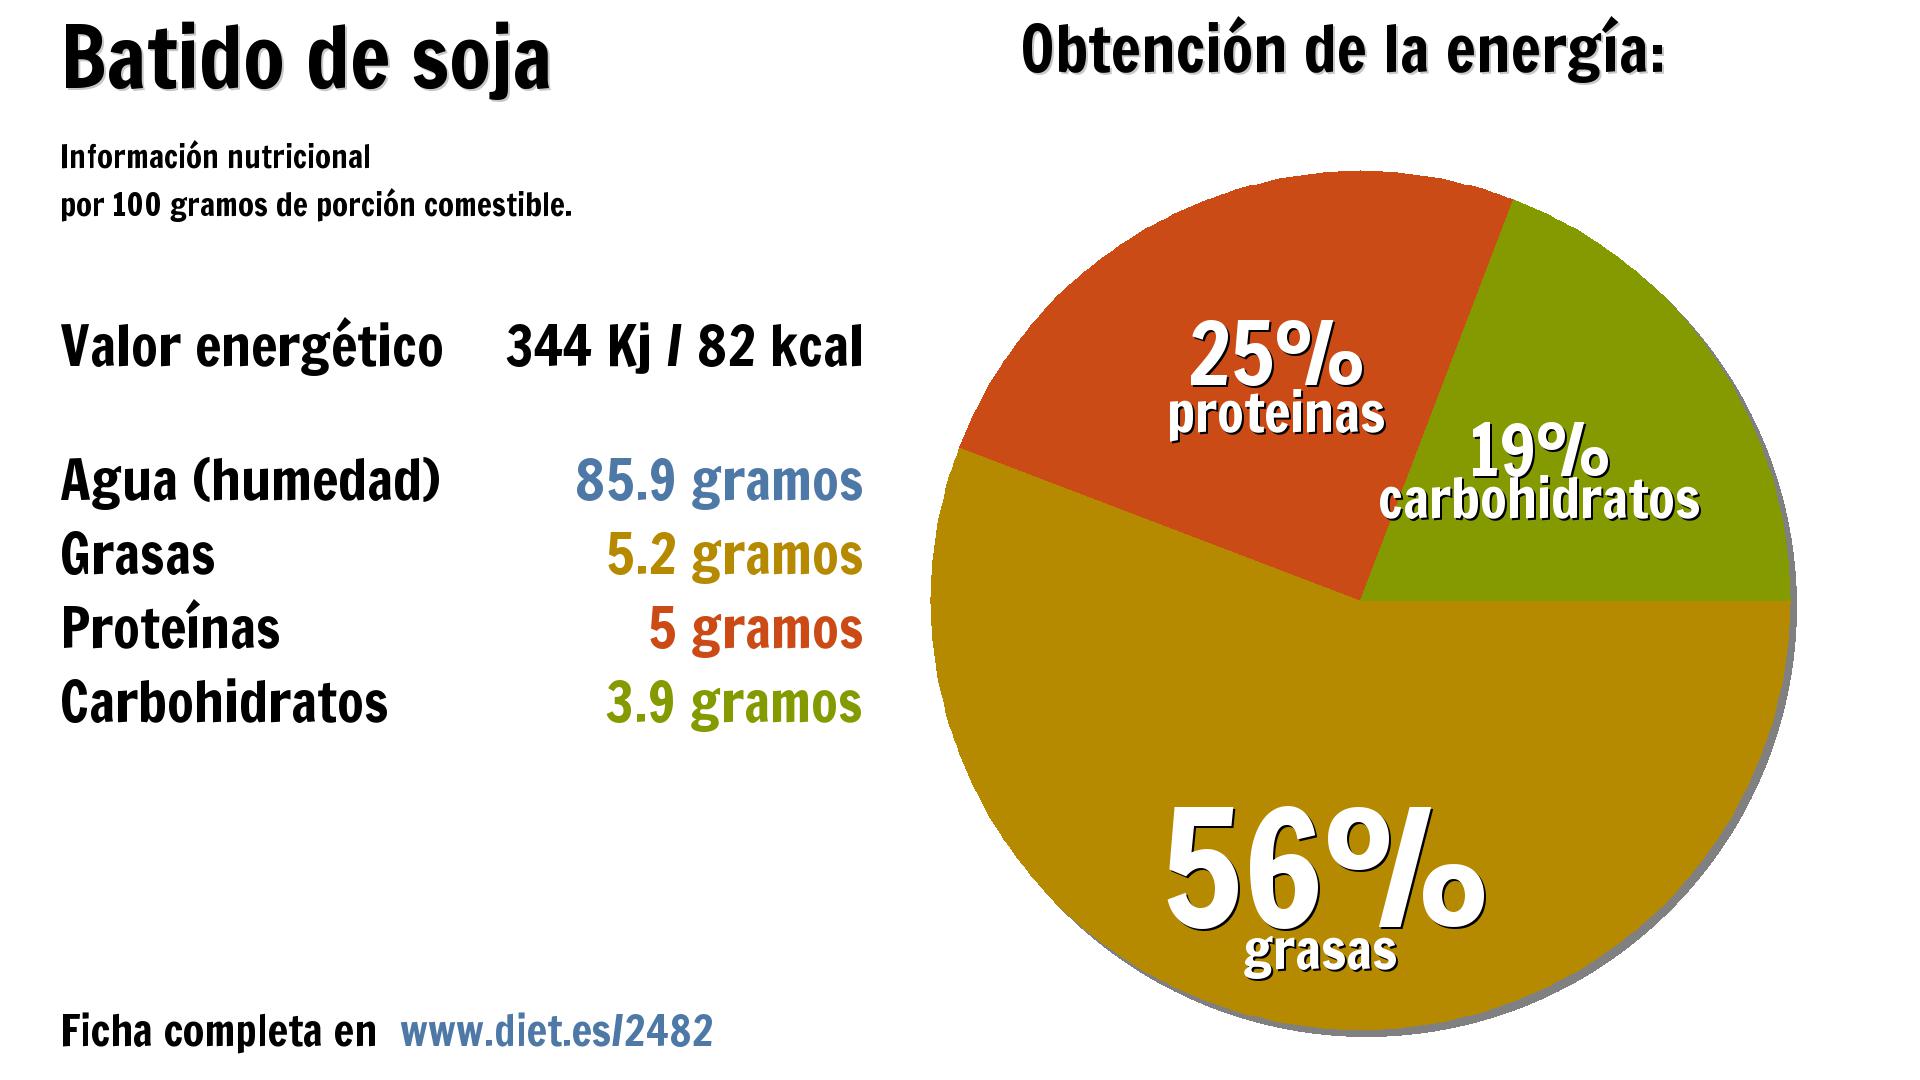 Batido de soja: energía 344 Kj, agua 86 g., grasas 5 g., proteínas 5 g. y carbohidratos 4 g.